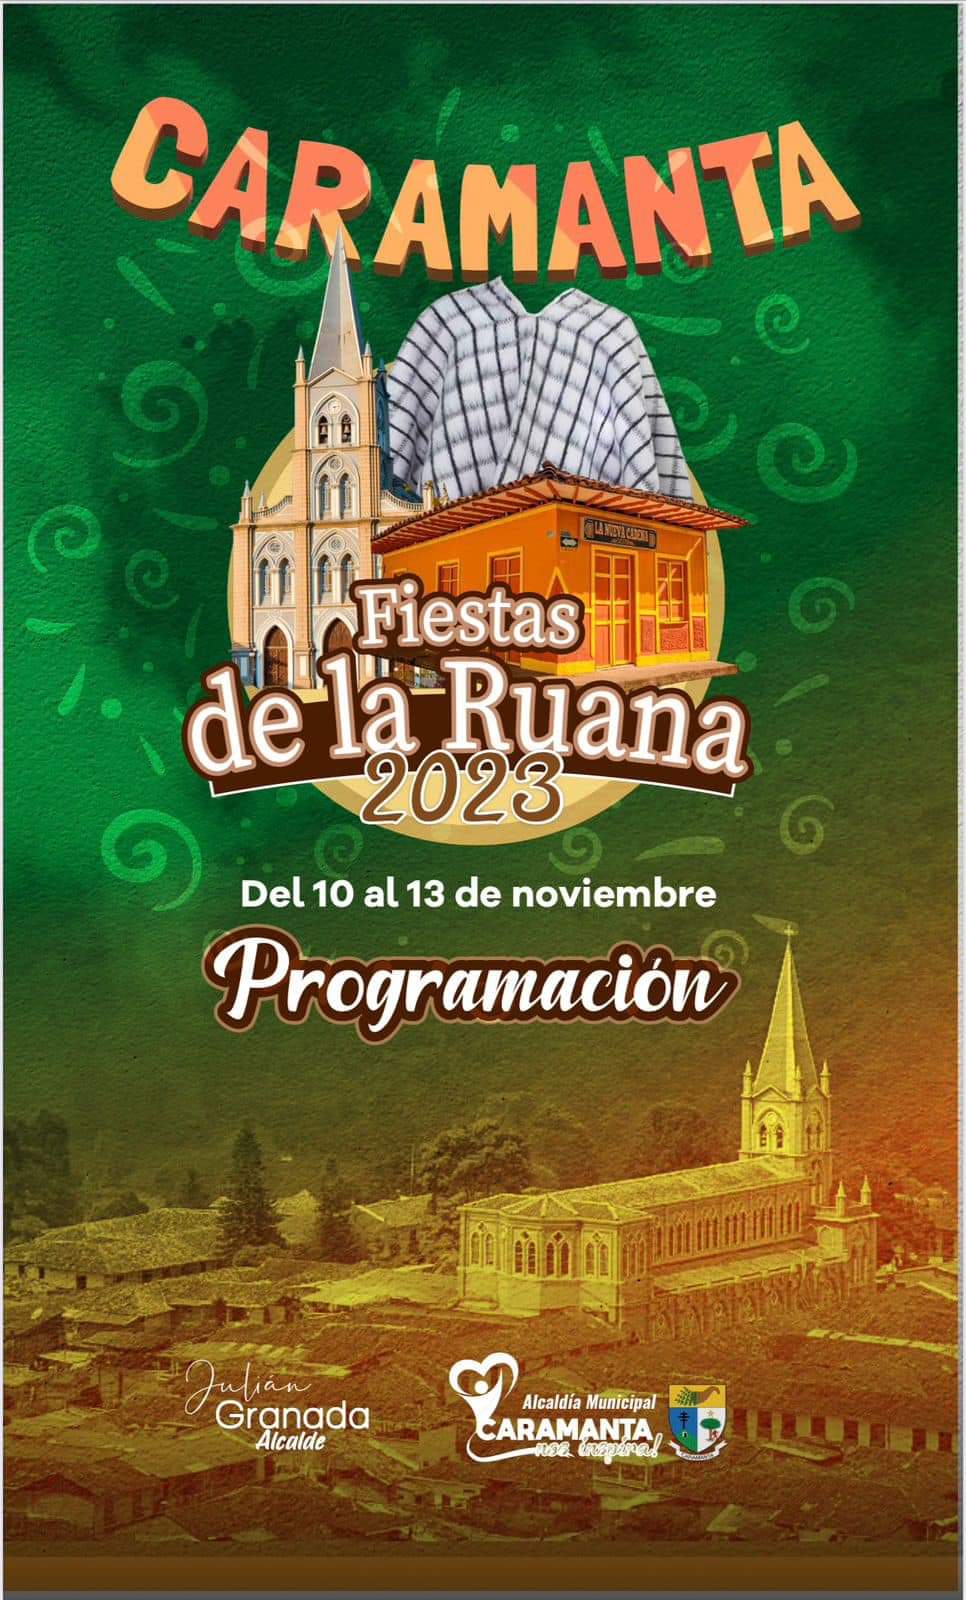 Fiestas de la Ruana 2023 - Caramanta - 1